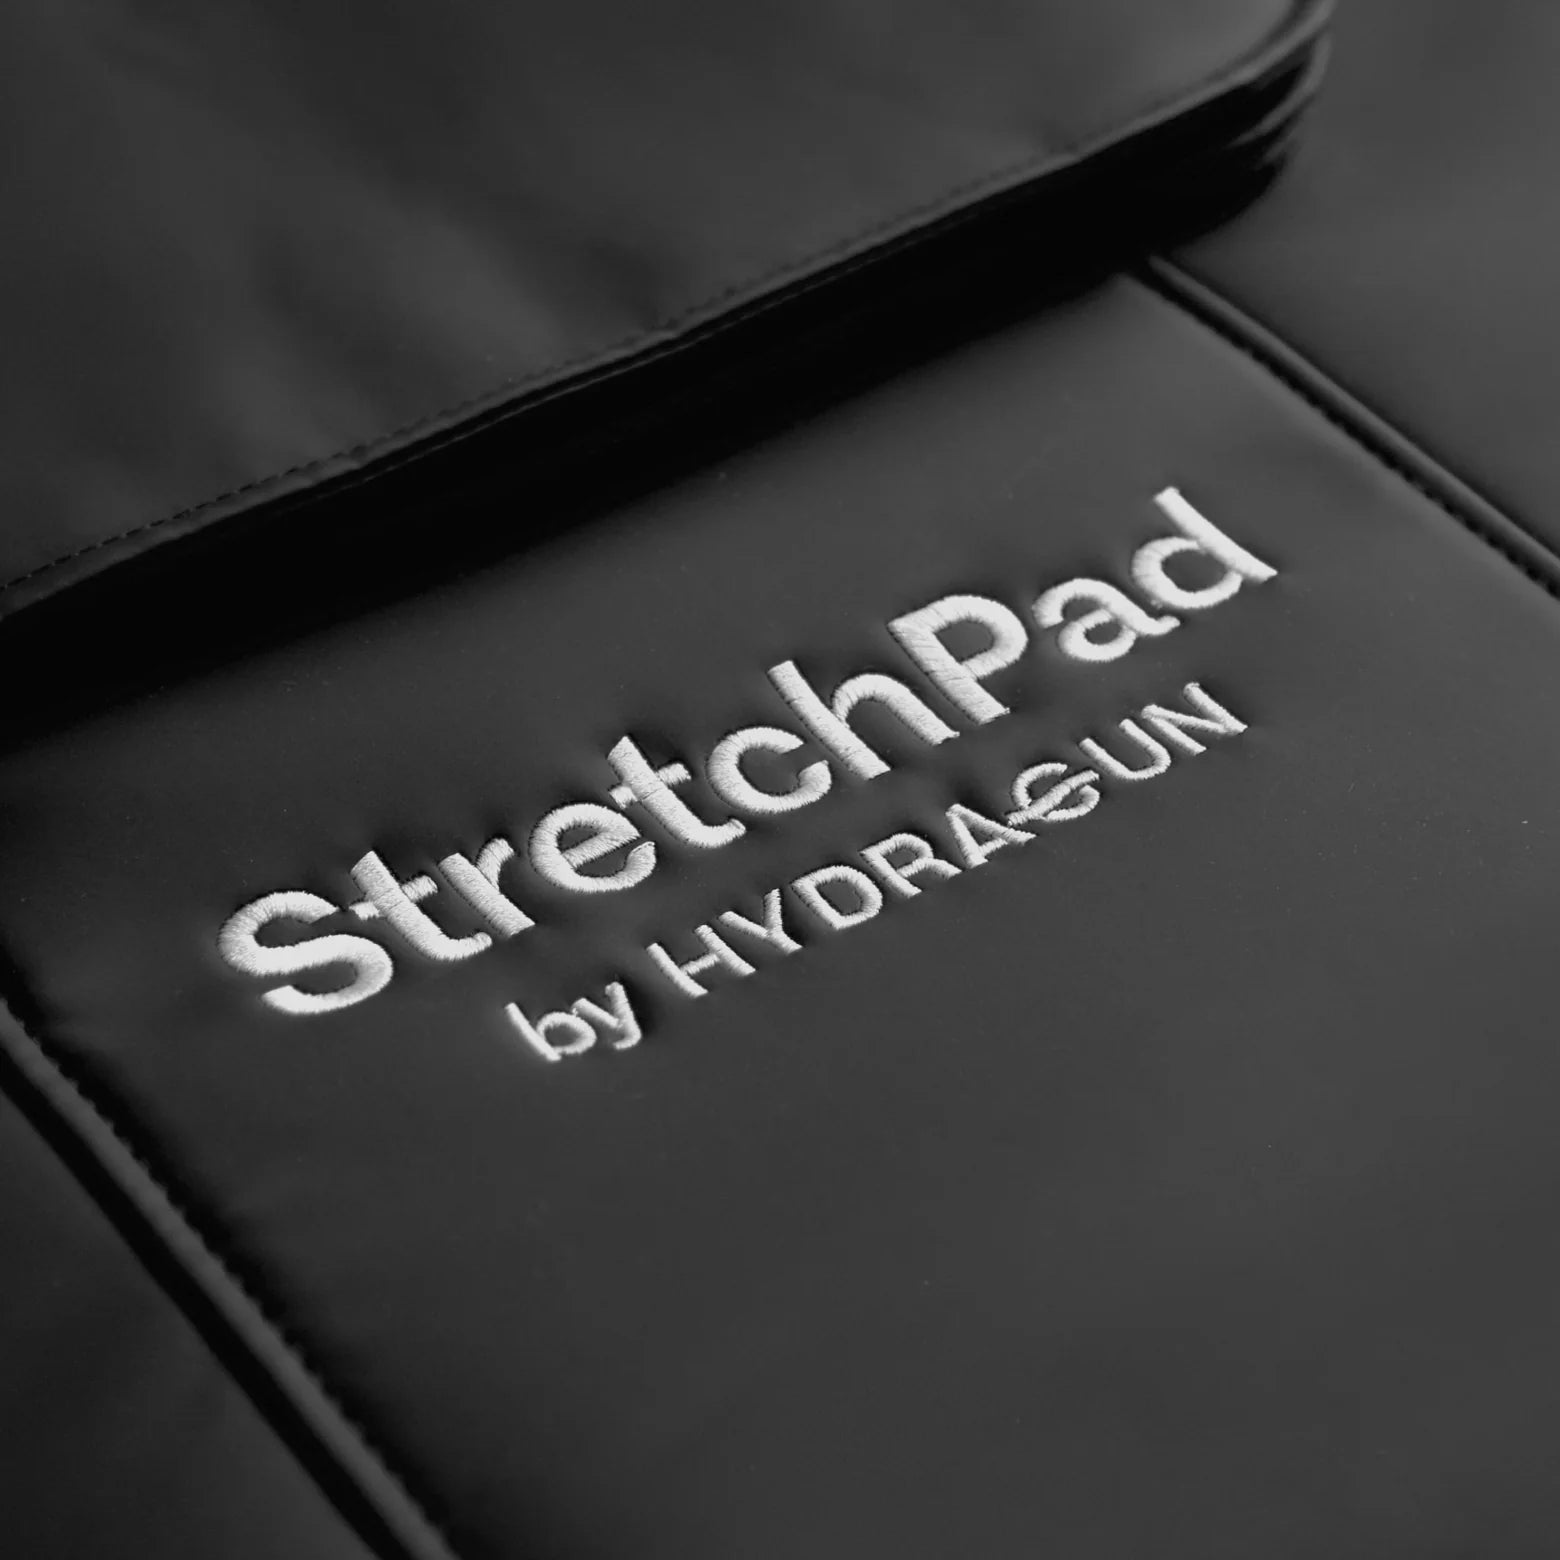 Hydragun StretchPad